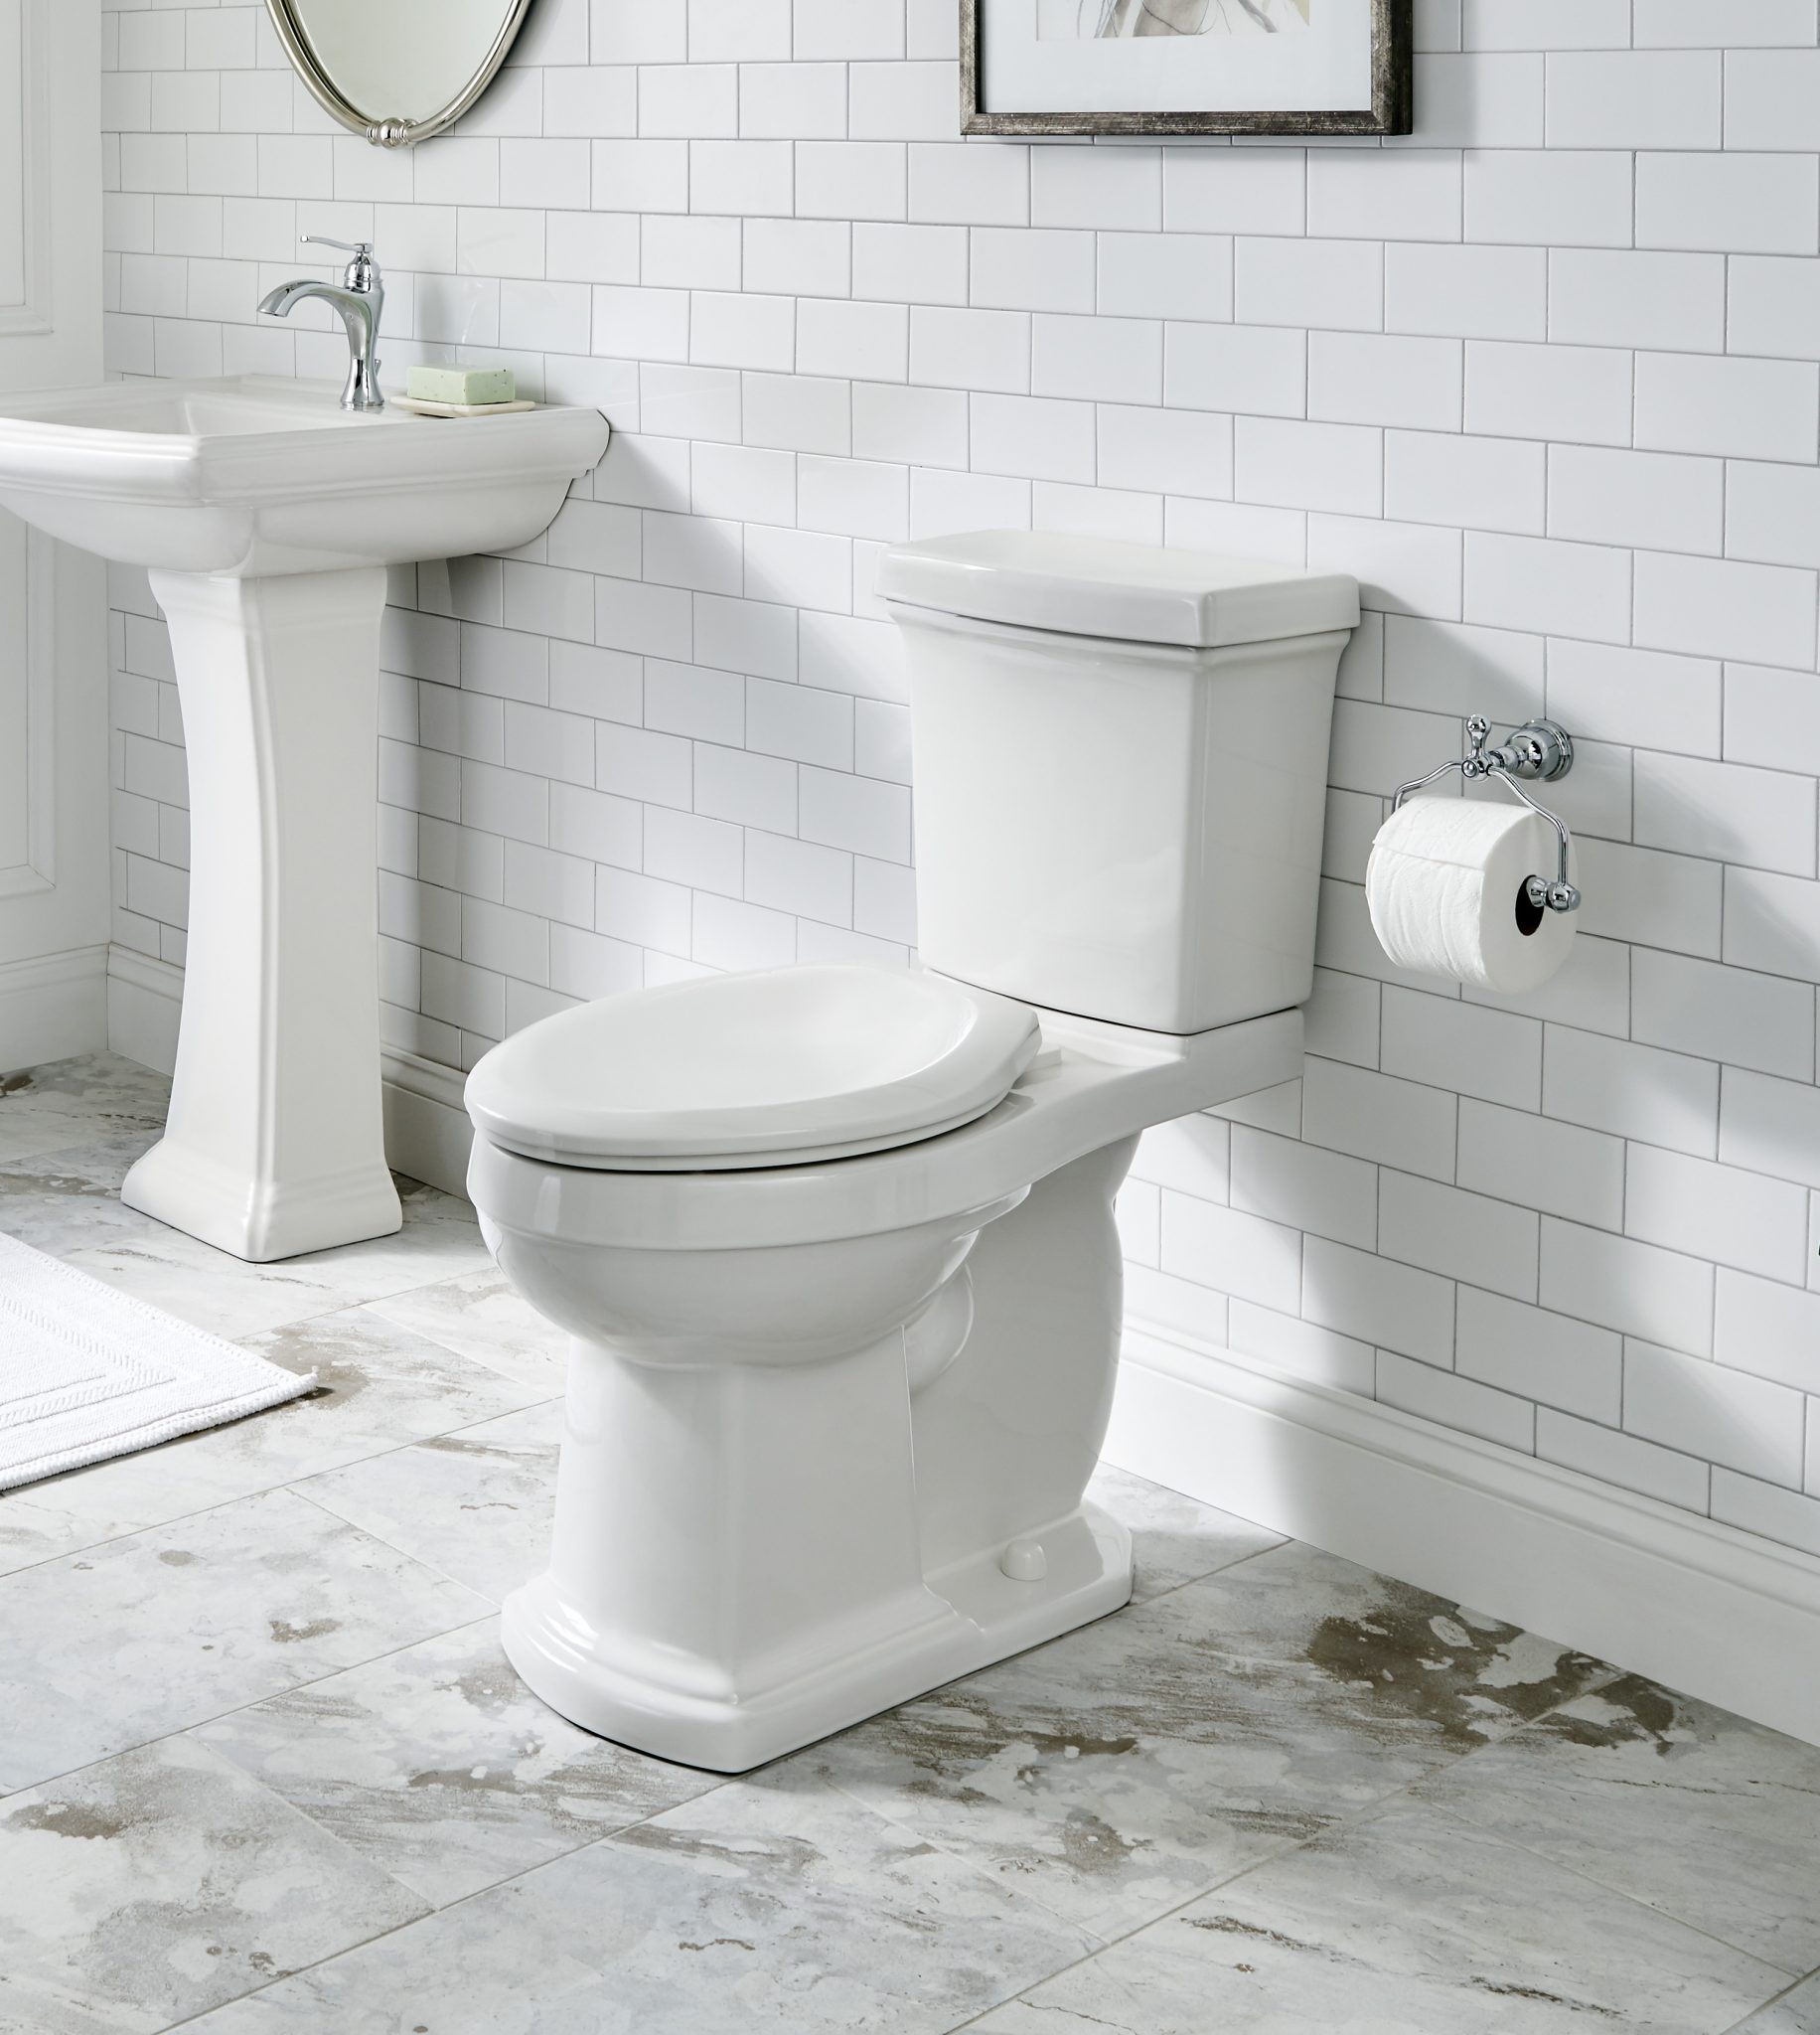 Gerber Plumbing Fixtures | Toilets, Showers, Sinks, Faucets